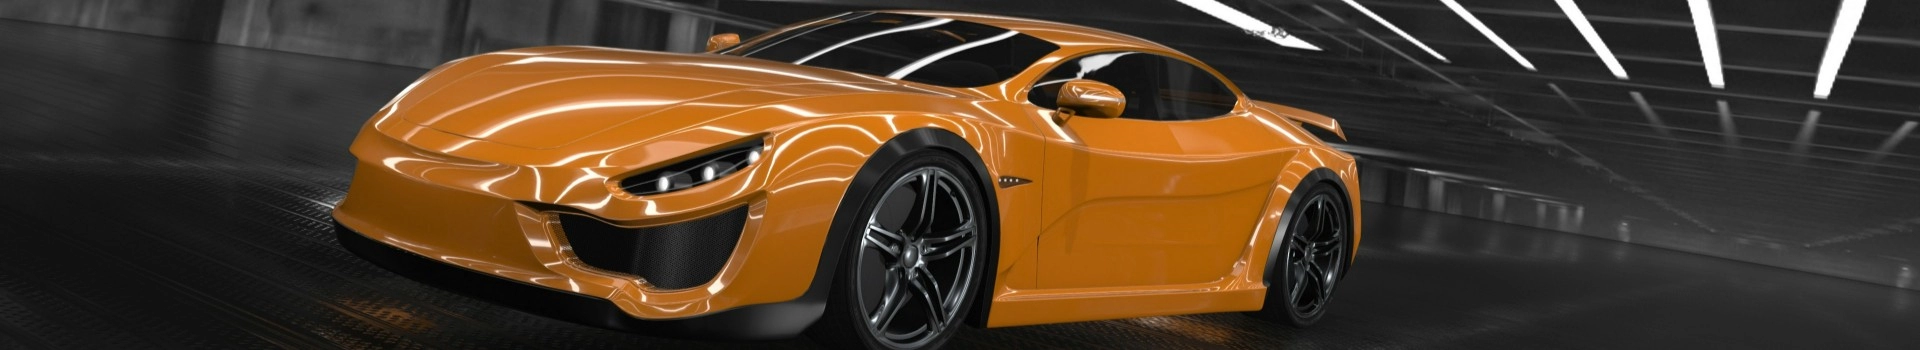 pomarańczowy samochód